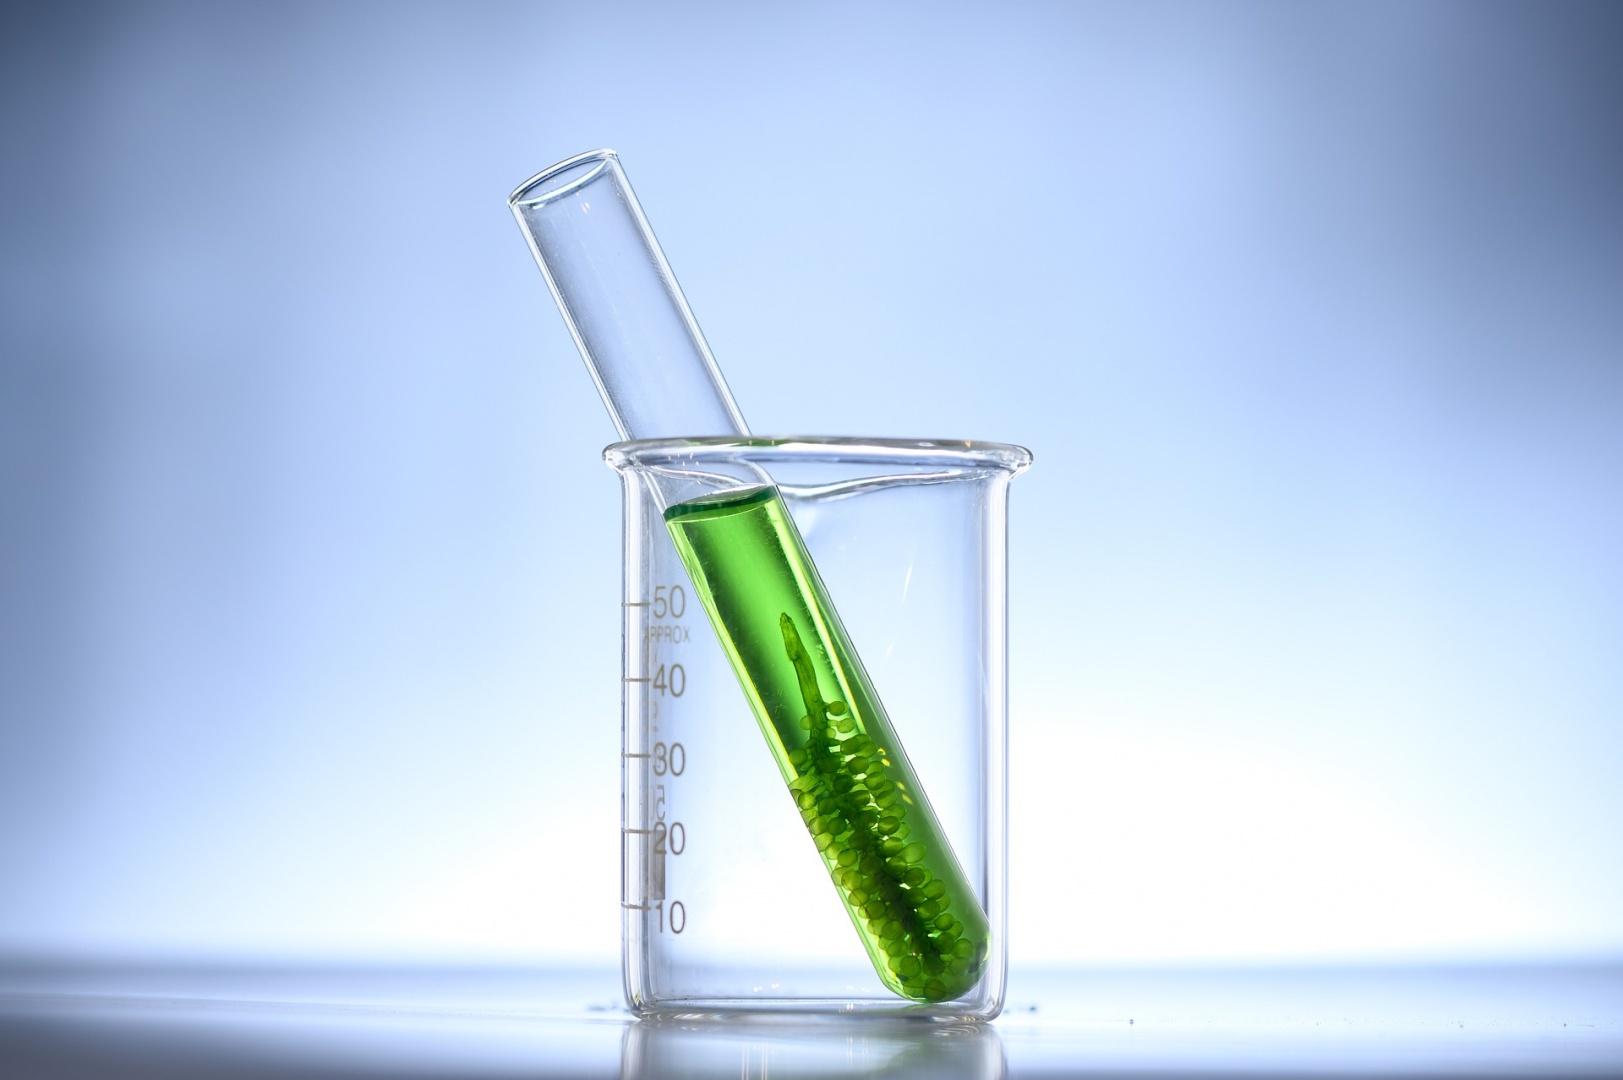 Tubo de ensaio contendo um líquido verde e uma floração de microalgas. O tubo de ensaio está dentro de um béquer de vidro.